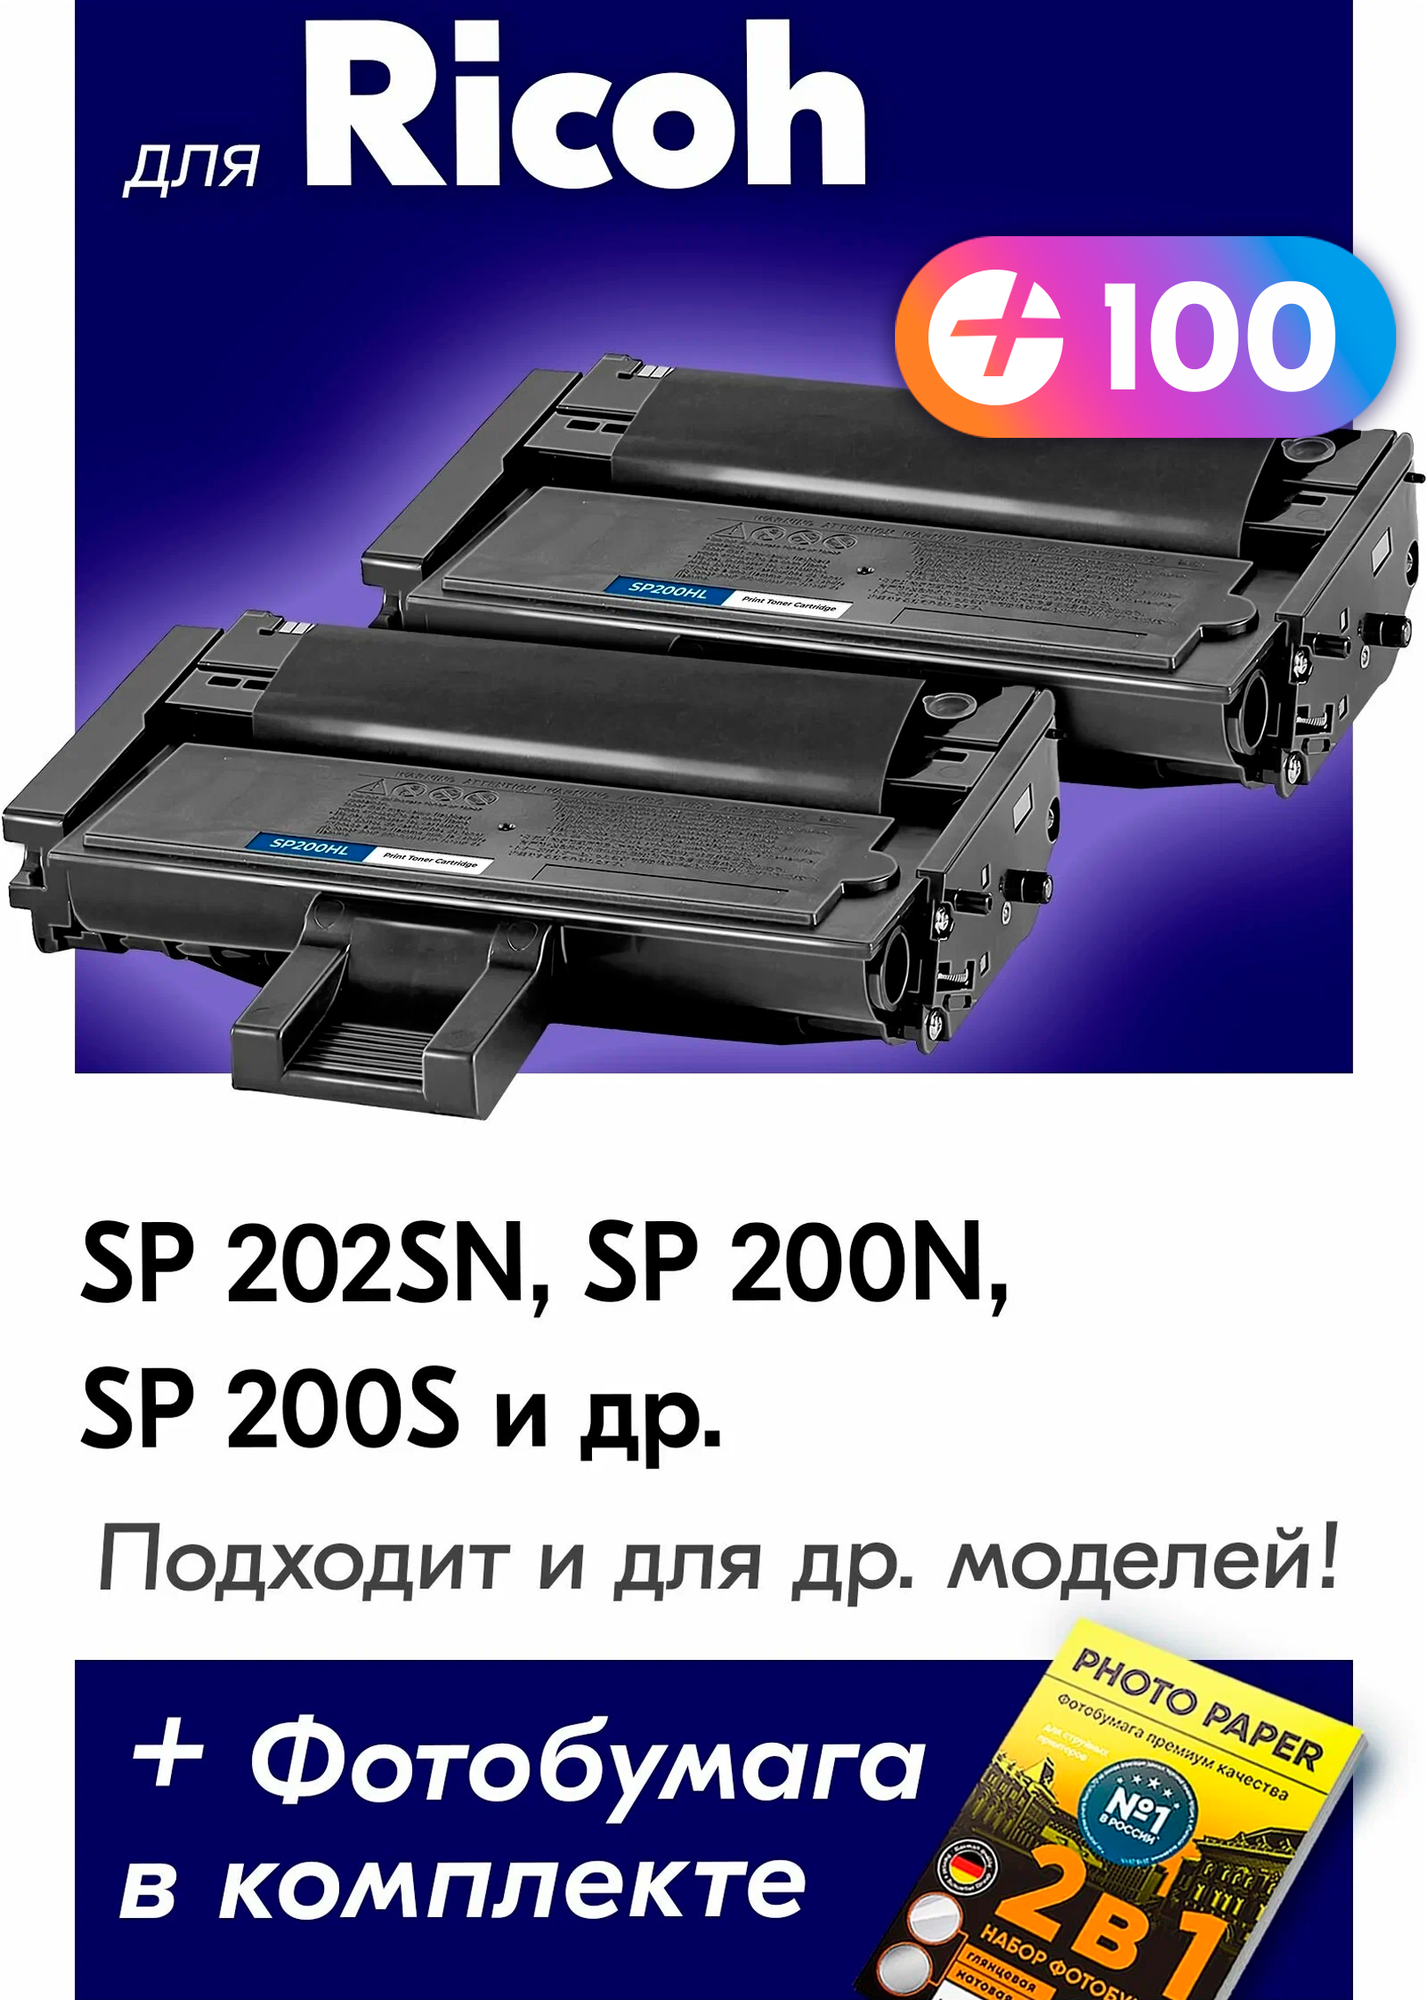 Лазерные картриджи для Ricoh Type SP200HL, Ricoh AficioSP 200, SP 210, SP 212, SP 202 и др. с краской черные новые заправляемые, 1500 копий